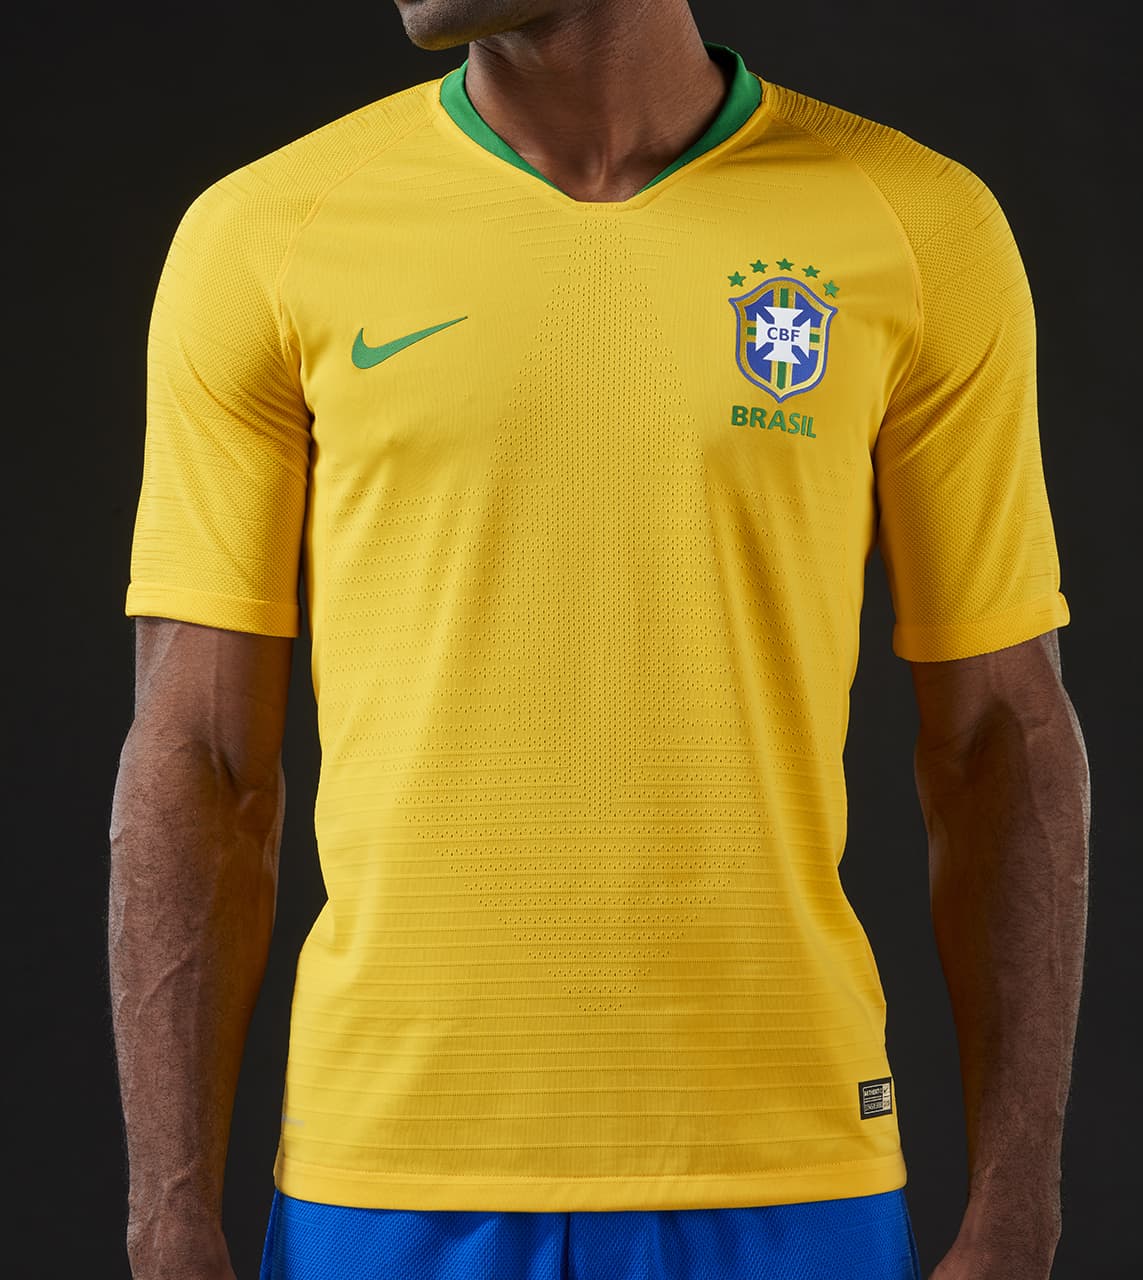 ブラジル代表 18 ワールドカップユニフォーム ユニ11